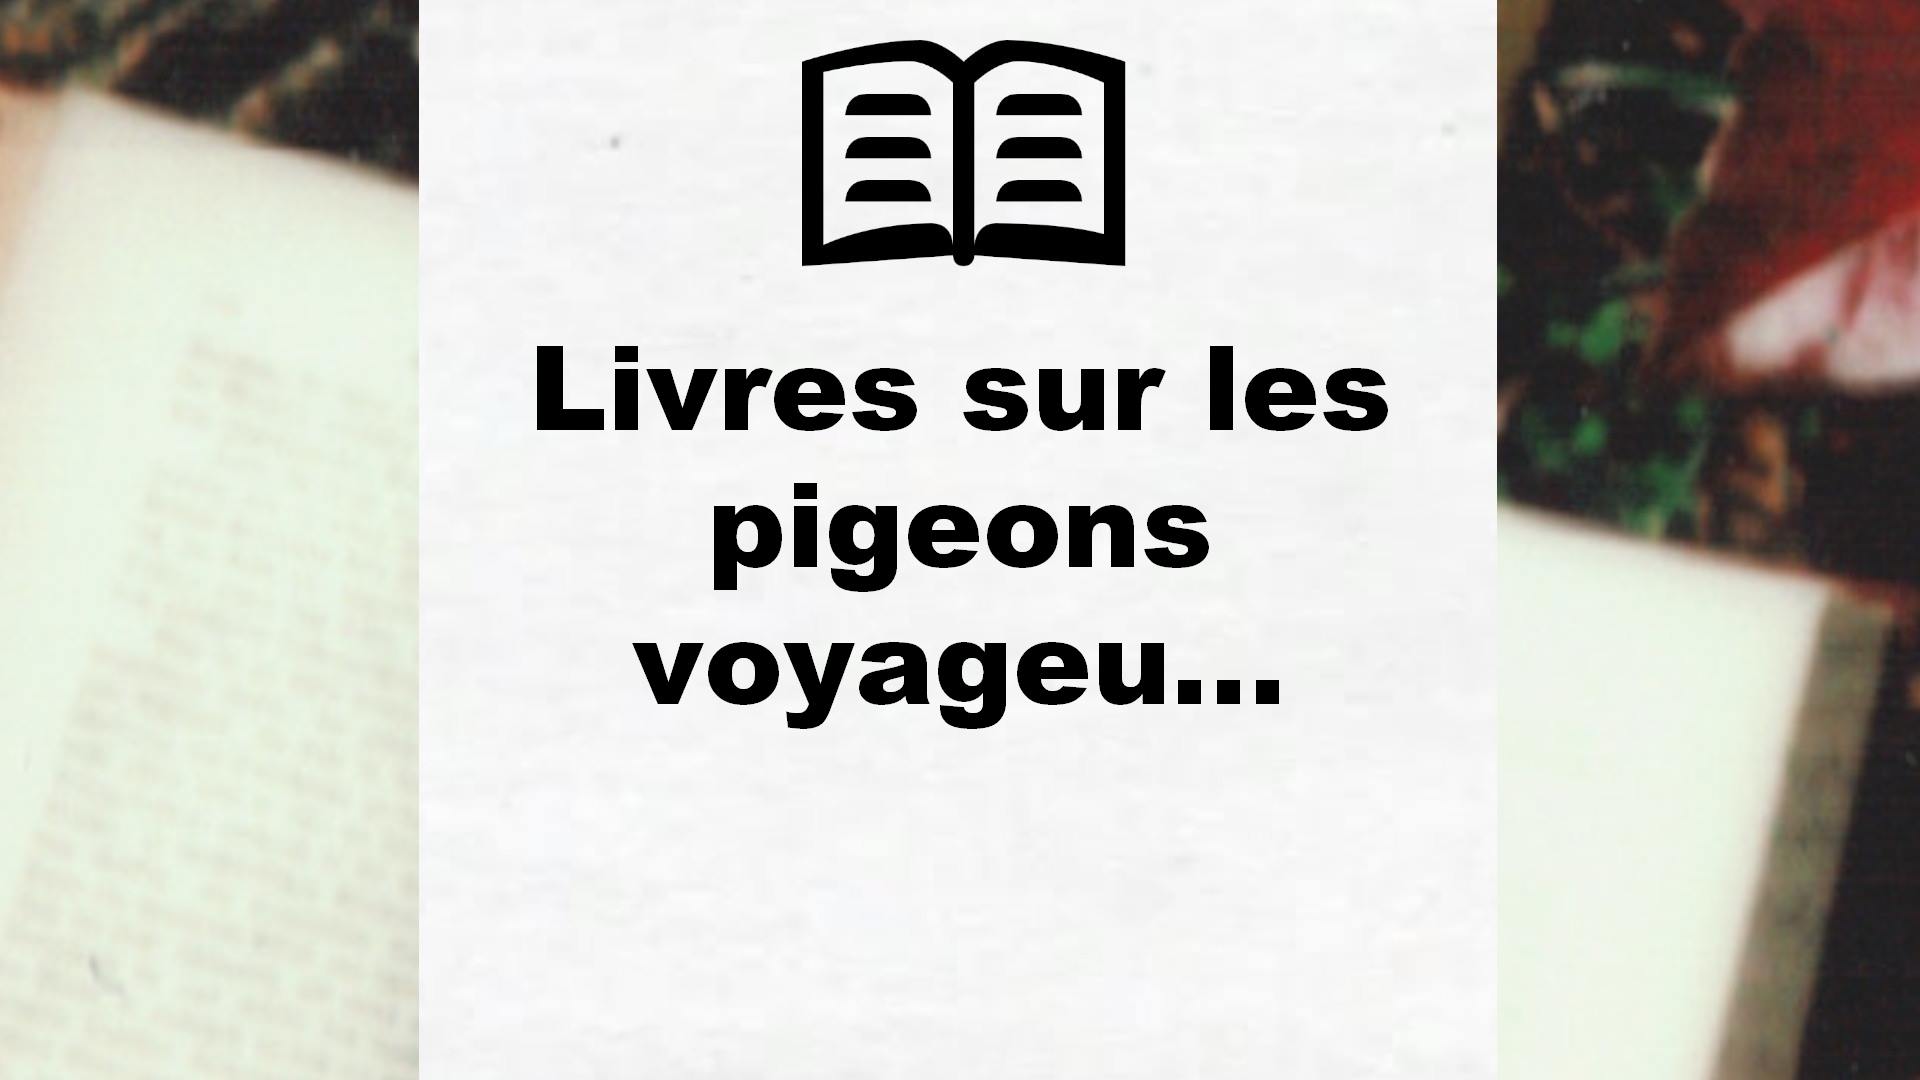 Livres sur les pigeons voyageurs